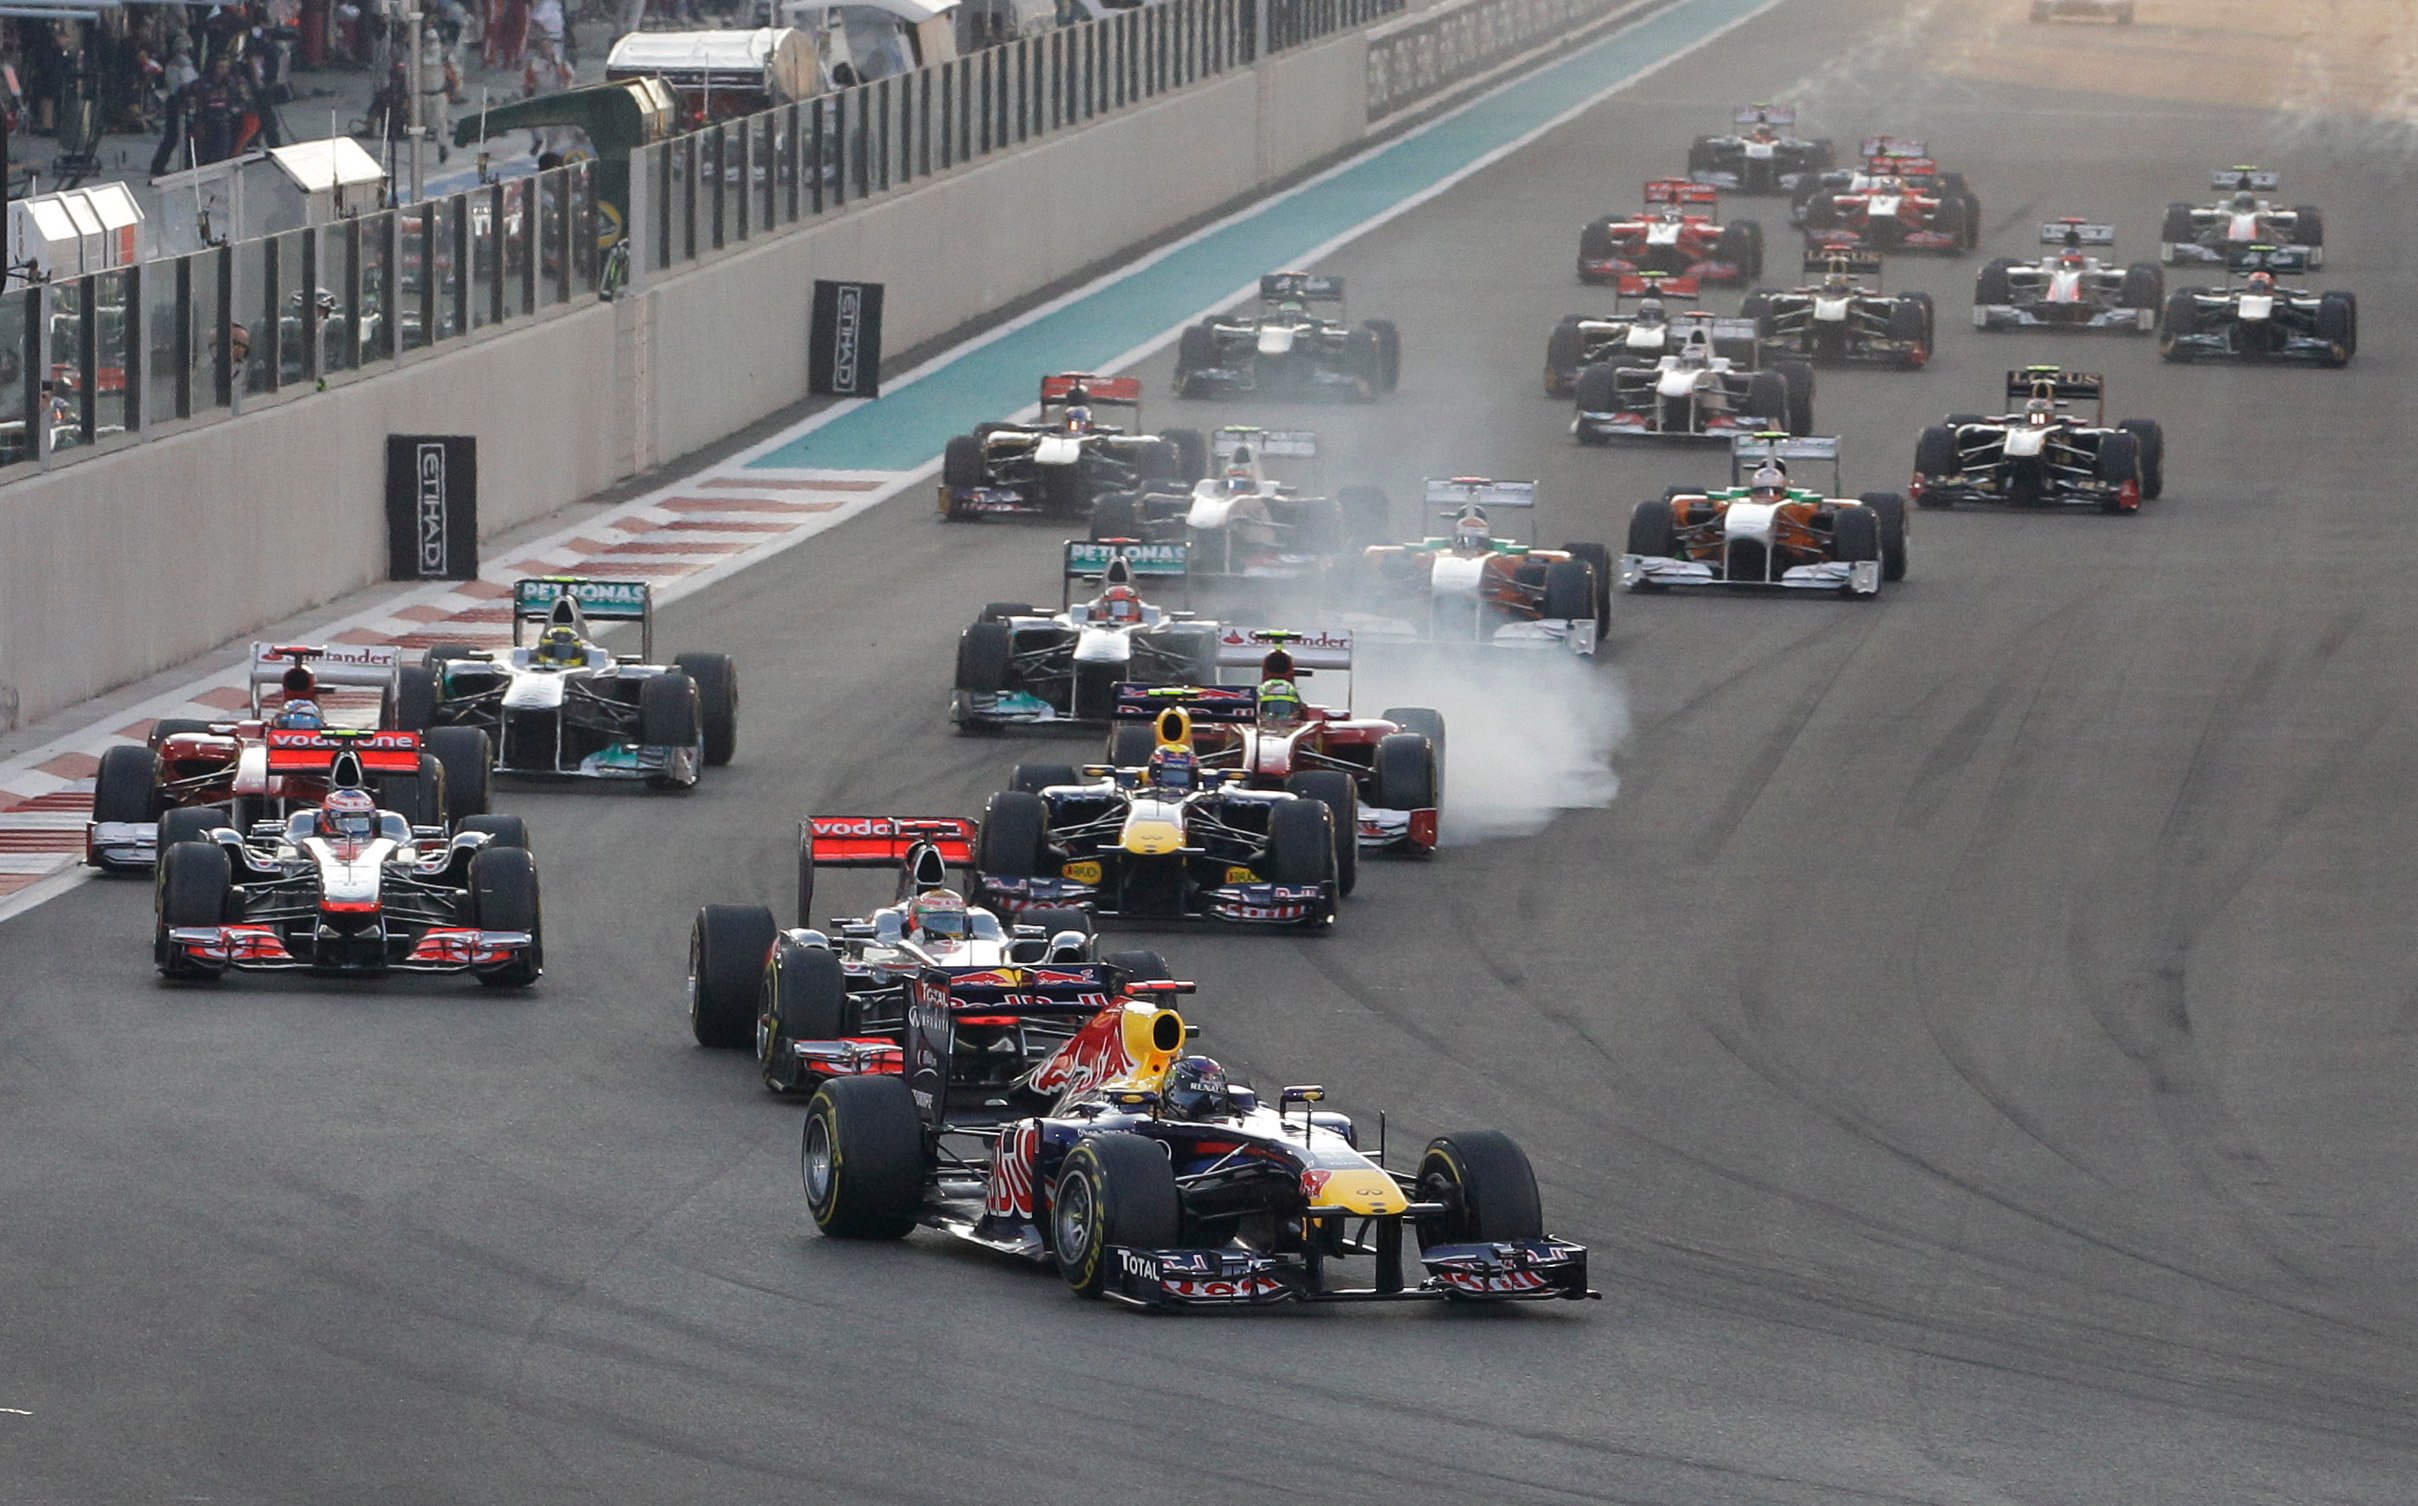 Nigel Mansell, Red Bull, Fernando Alonso, Abu Dhabi, Lewis Hamilton, Formel 1, Sebastian Vettel, Jenson Button, Mark Webber